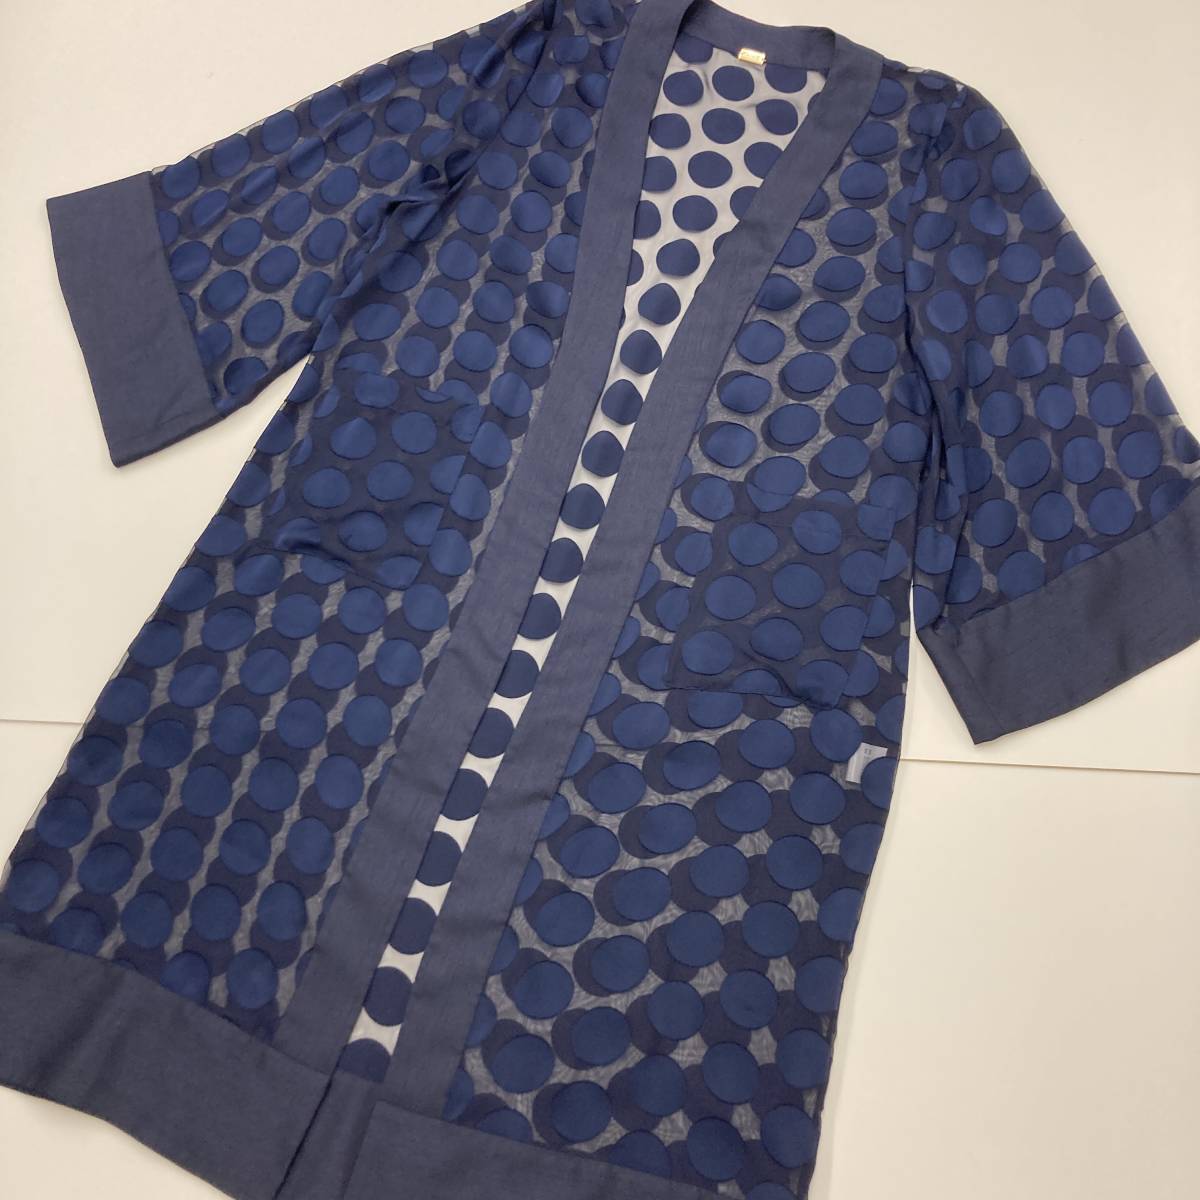 KIIRO три сосна прозрачный полька-дот свободная домашняя одежда перо ткань темно-синий темно-синий M размер желтый ... кимоно перо ткань длинное пальто 3070492